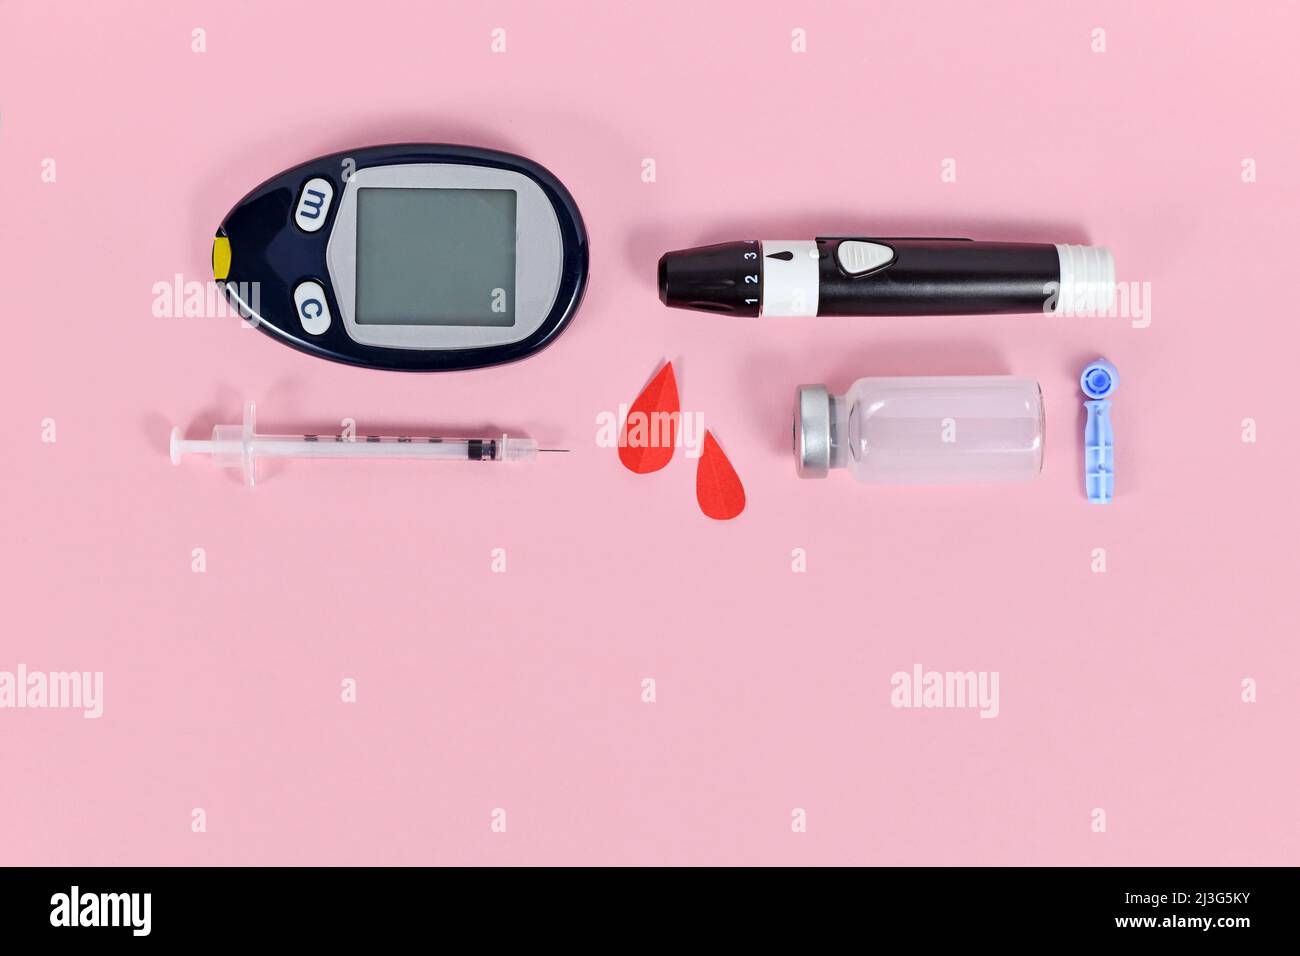 Équipement de traitement du diabète avec glucomètre, lancettes, flacon d'insuline et seringues Banque D'Images